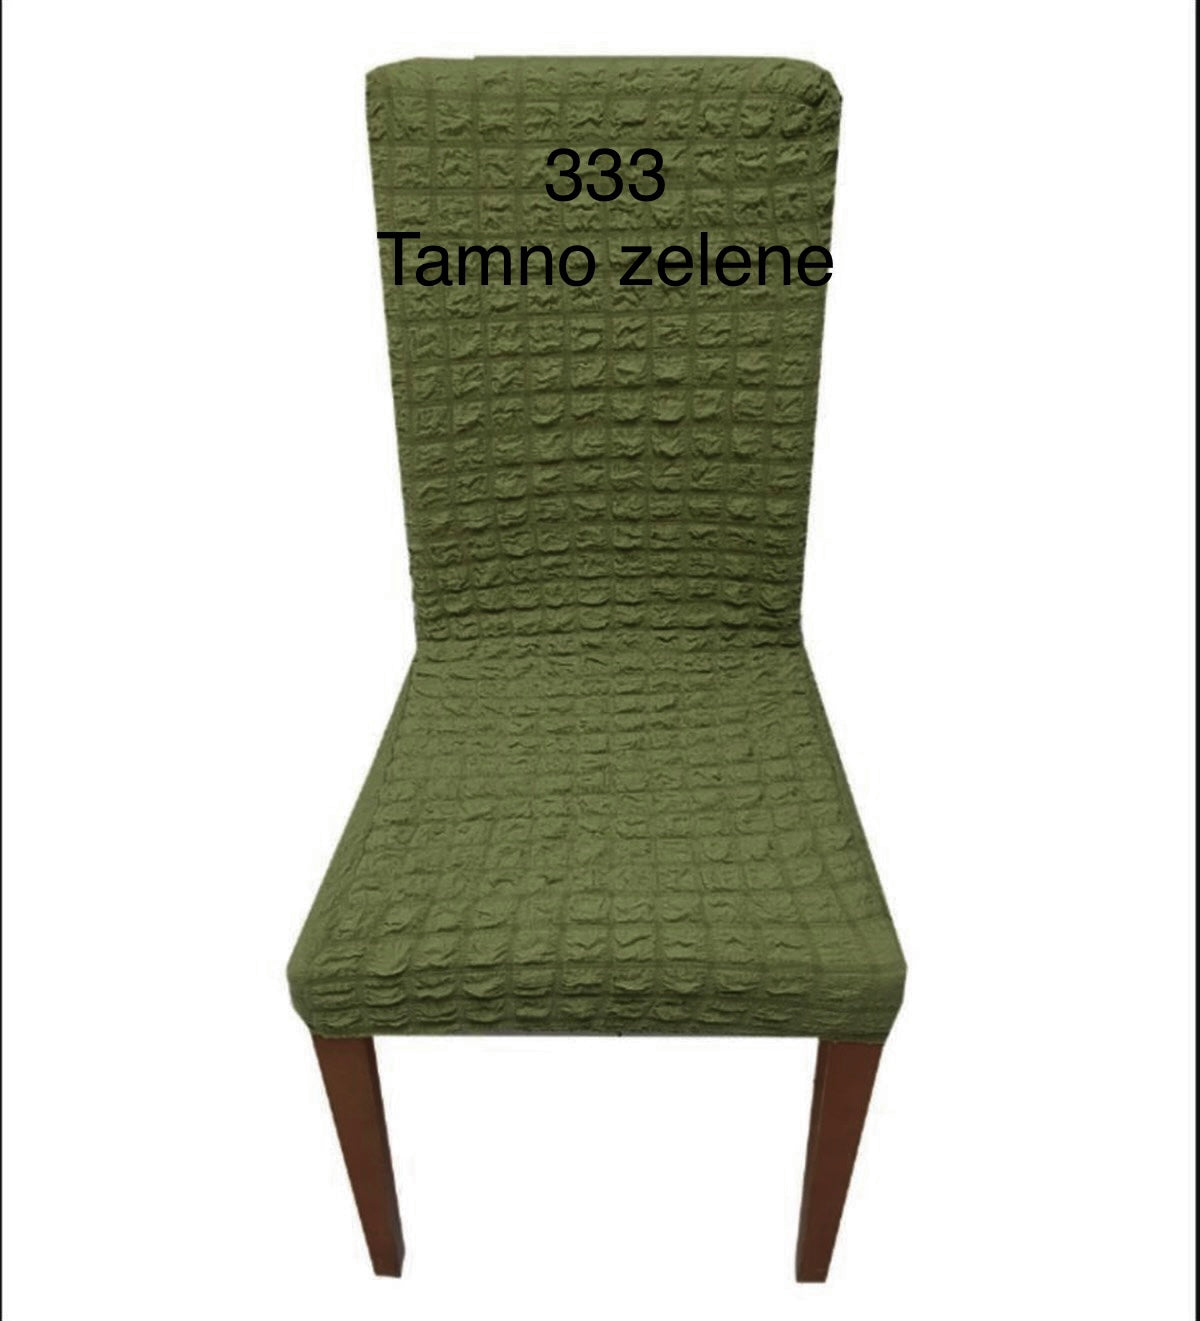 Navlake za stolice REBRASTE (broj333-tamno zelena ) 1komad